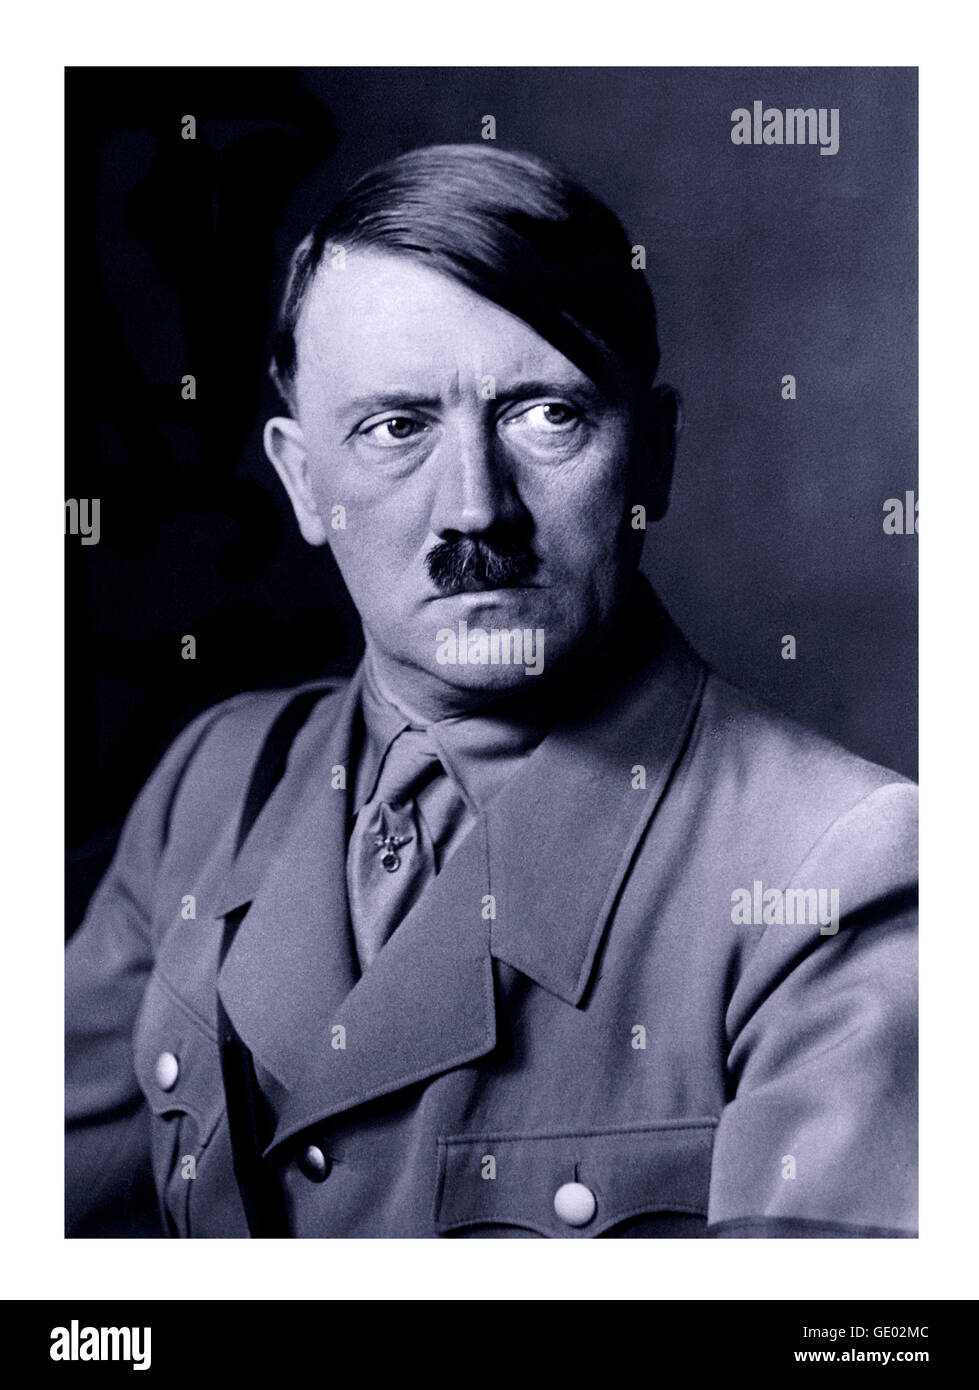 ADOLF HITLER dans les années 1930, le portrait officiel de Heinrich Hoffmann B&W d'Adolf Hitler en uniforme à partir duquel un célèbre portrait de peinture à l'huile de propagande nazie a été réalisé Banque D'Images